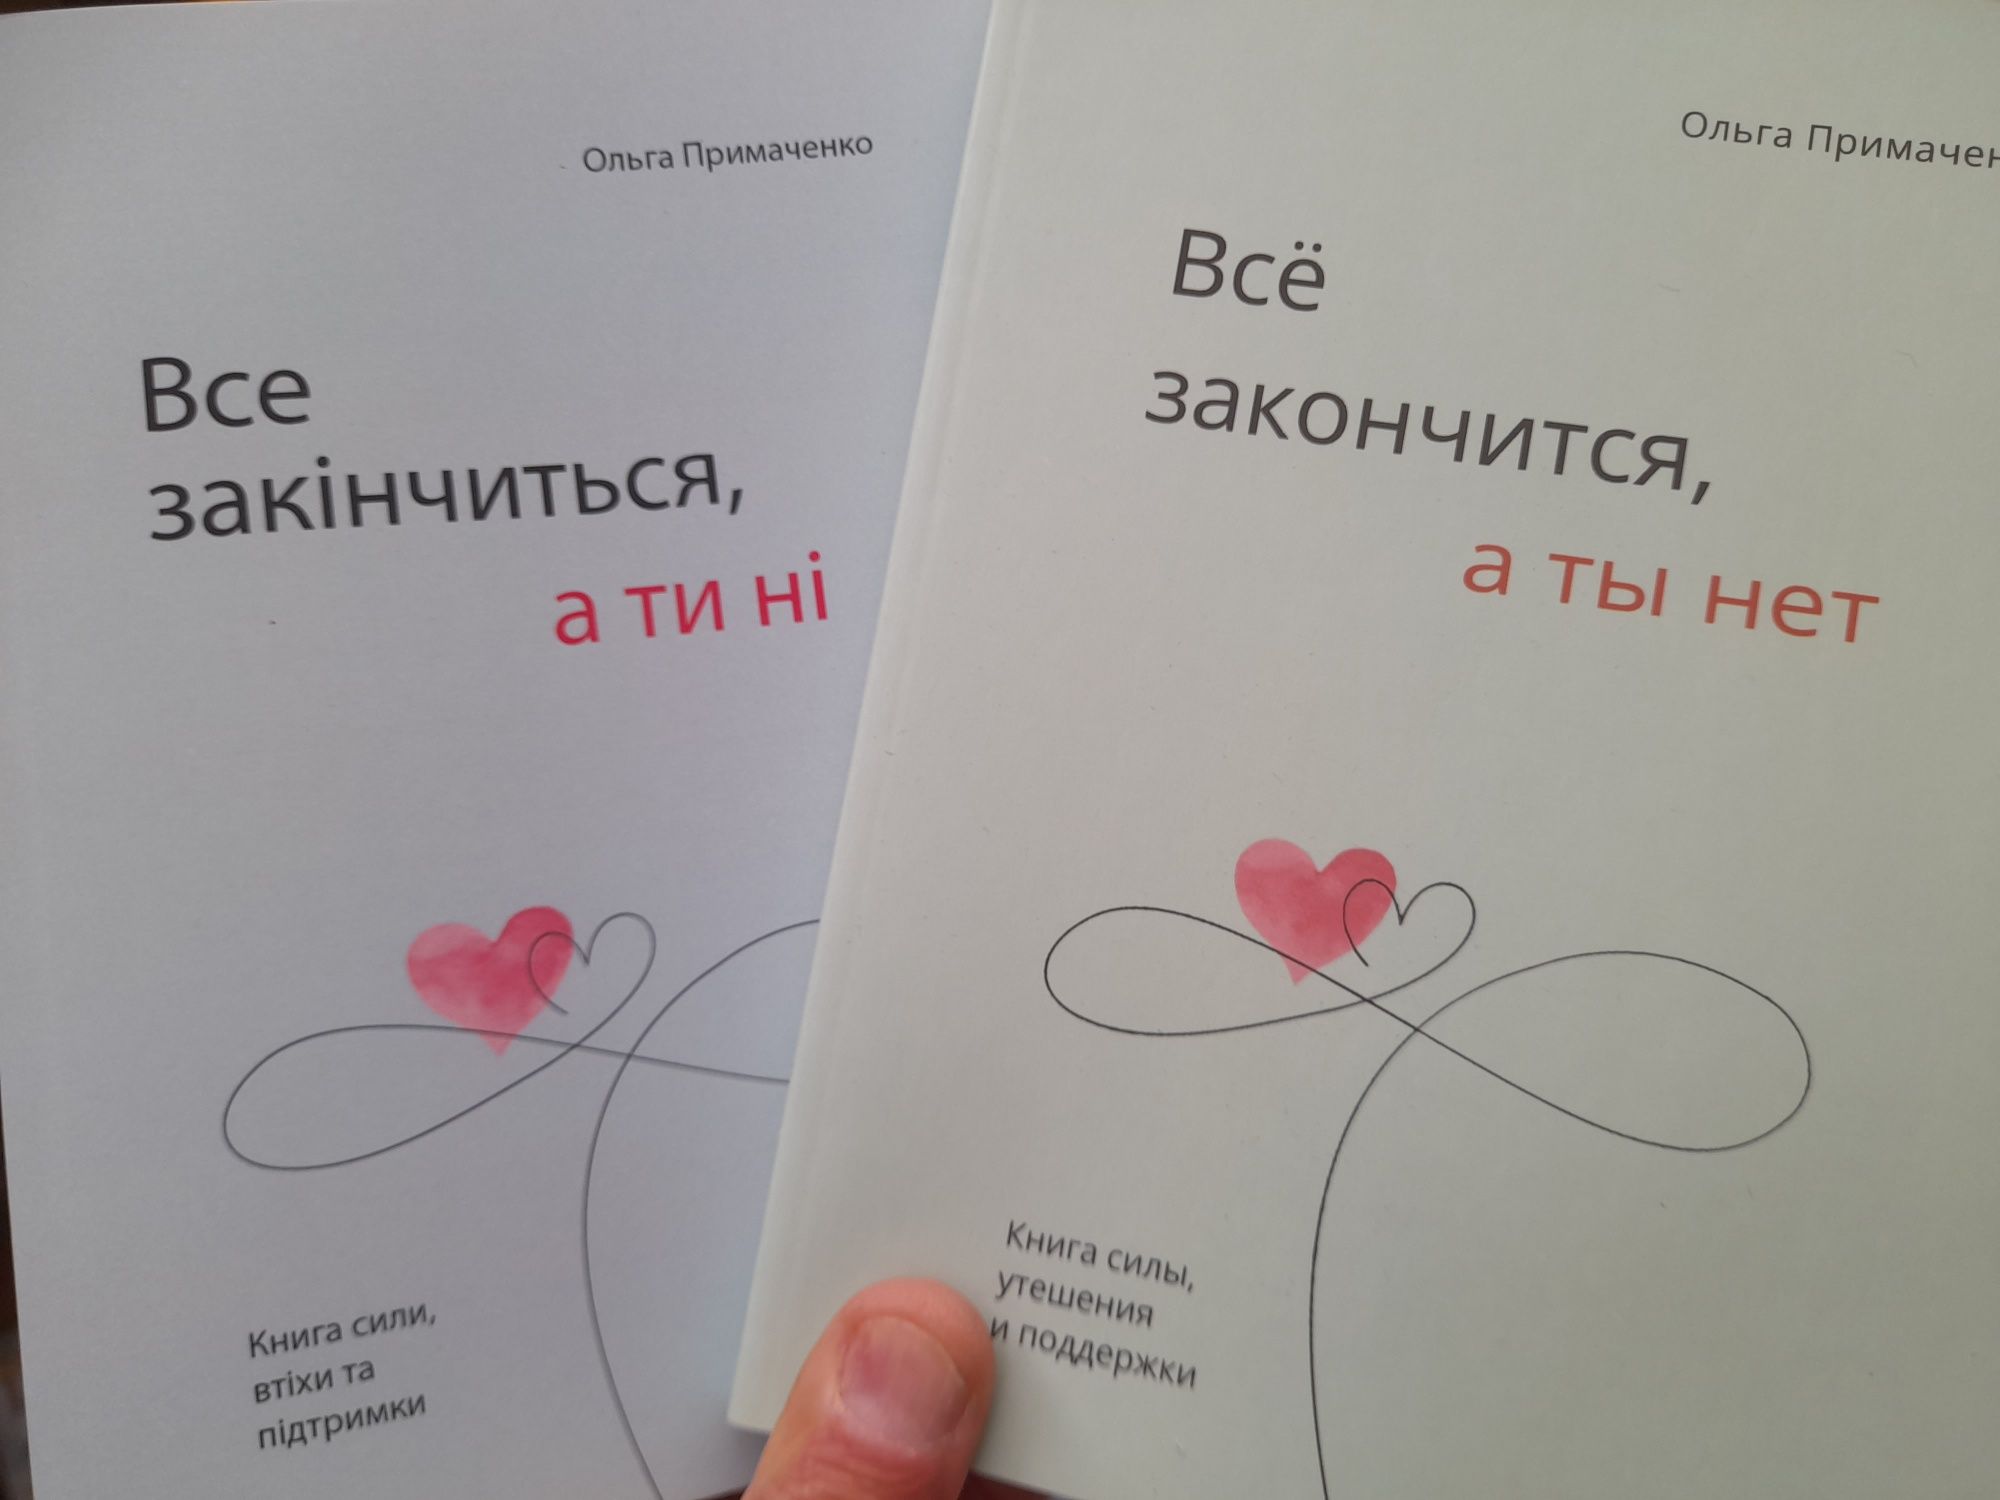 Ольга Примаченко "Все закончится, а ты нет", книга силы, утешения и по